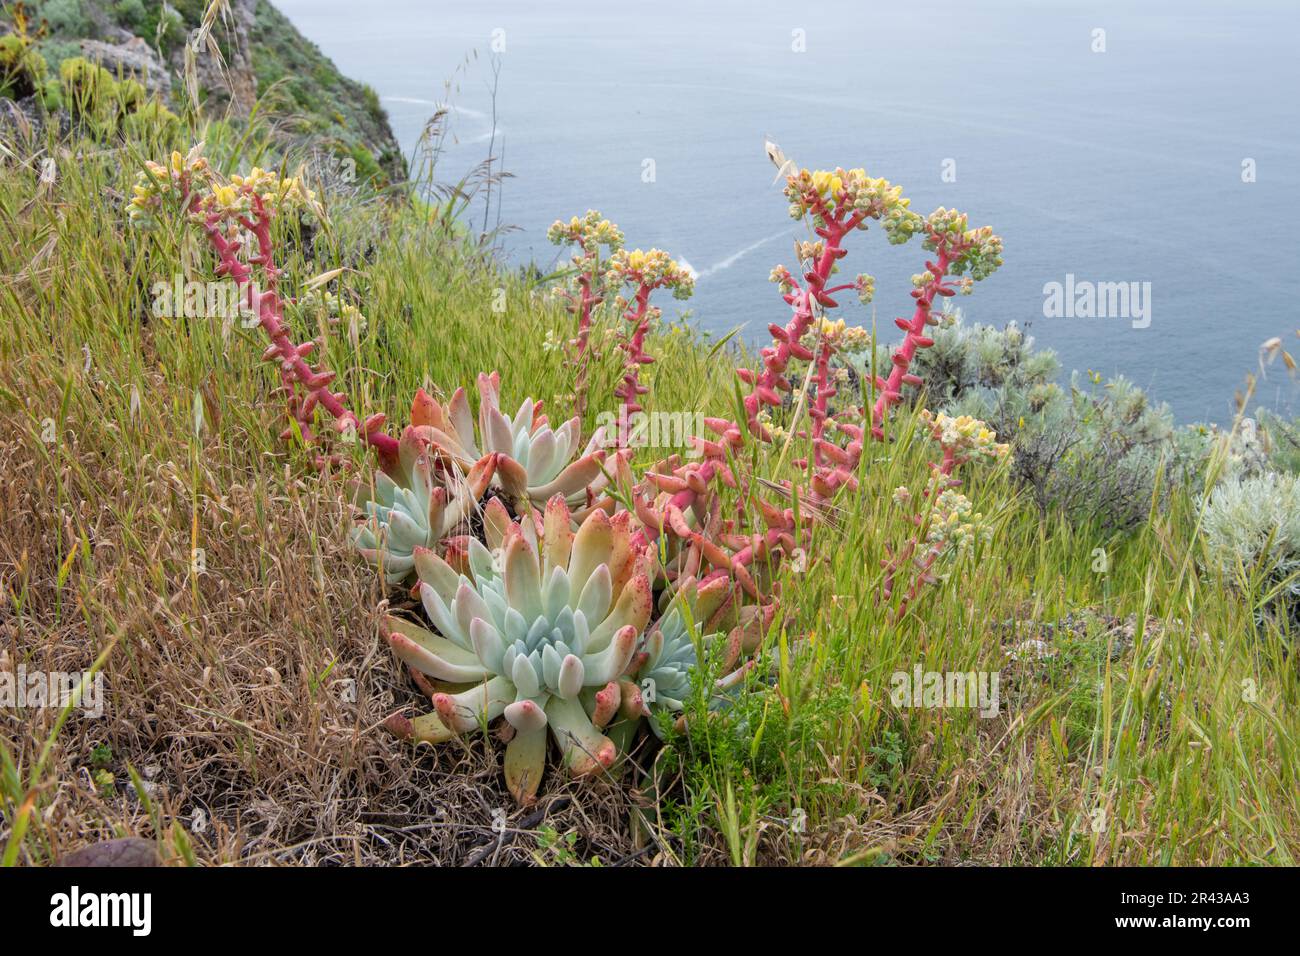 La vita di Greene, Dudleya greenei, dall'isola di Santa Cruz nel Parco Nazionale delle Isole del canale, California. Una pianta rara endemica delle isole. Foto Stock